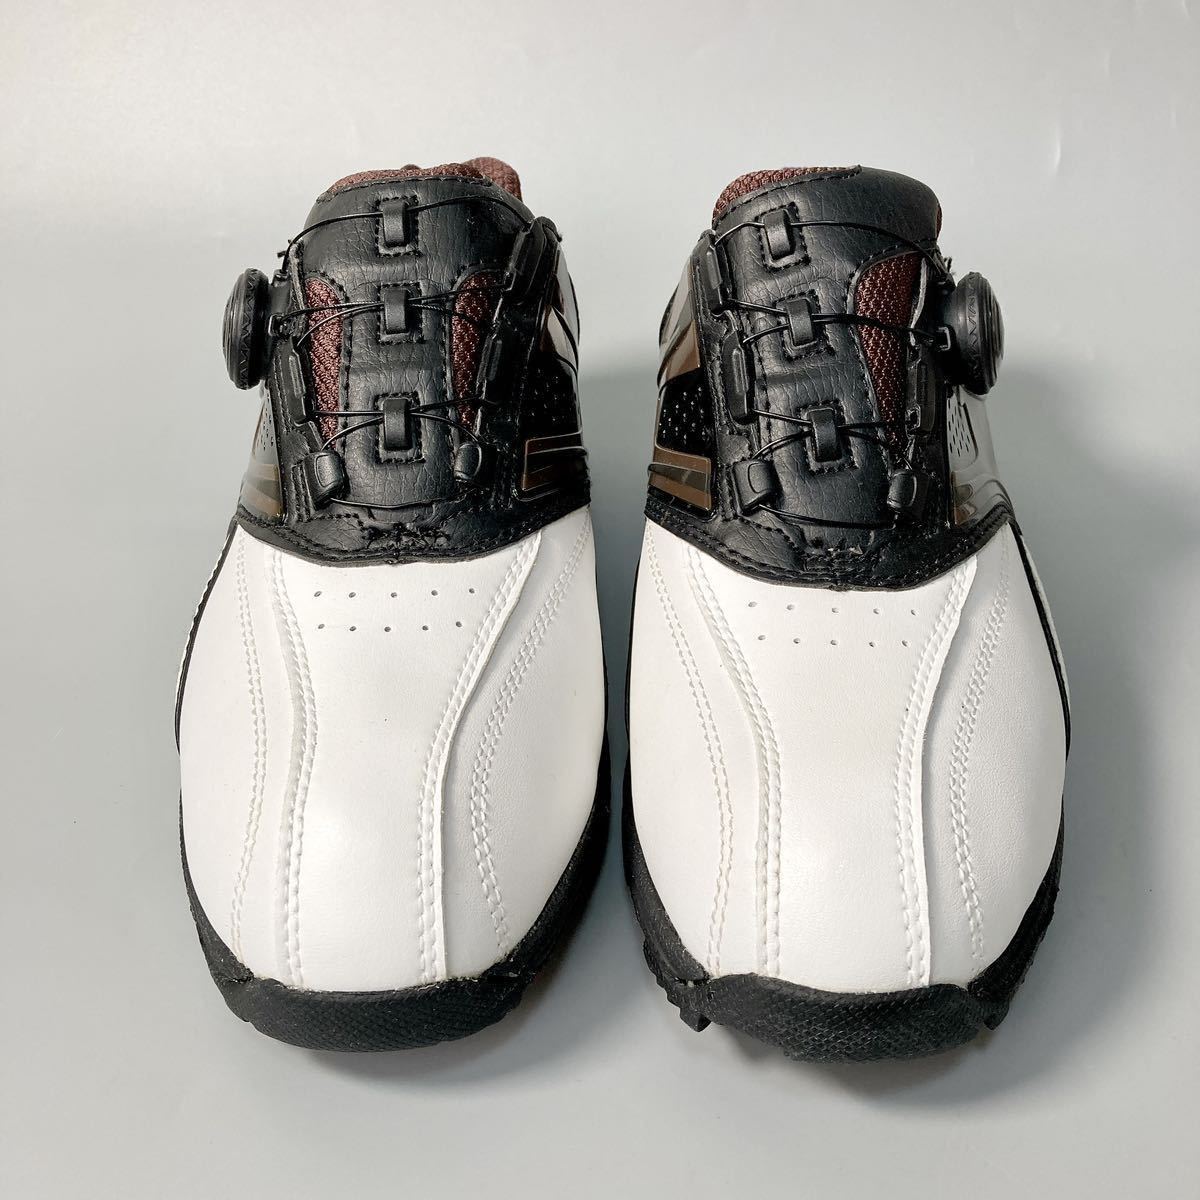  новый товар TIGORAtigola туфли для гольфа dial тип Golf одежда шиповки 25cm мужской B12430-122